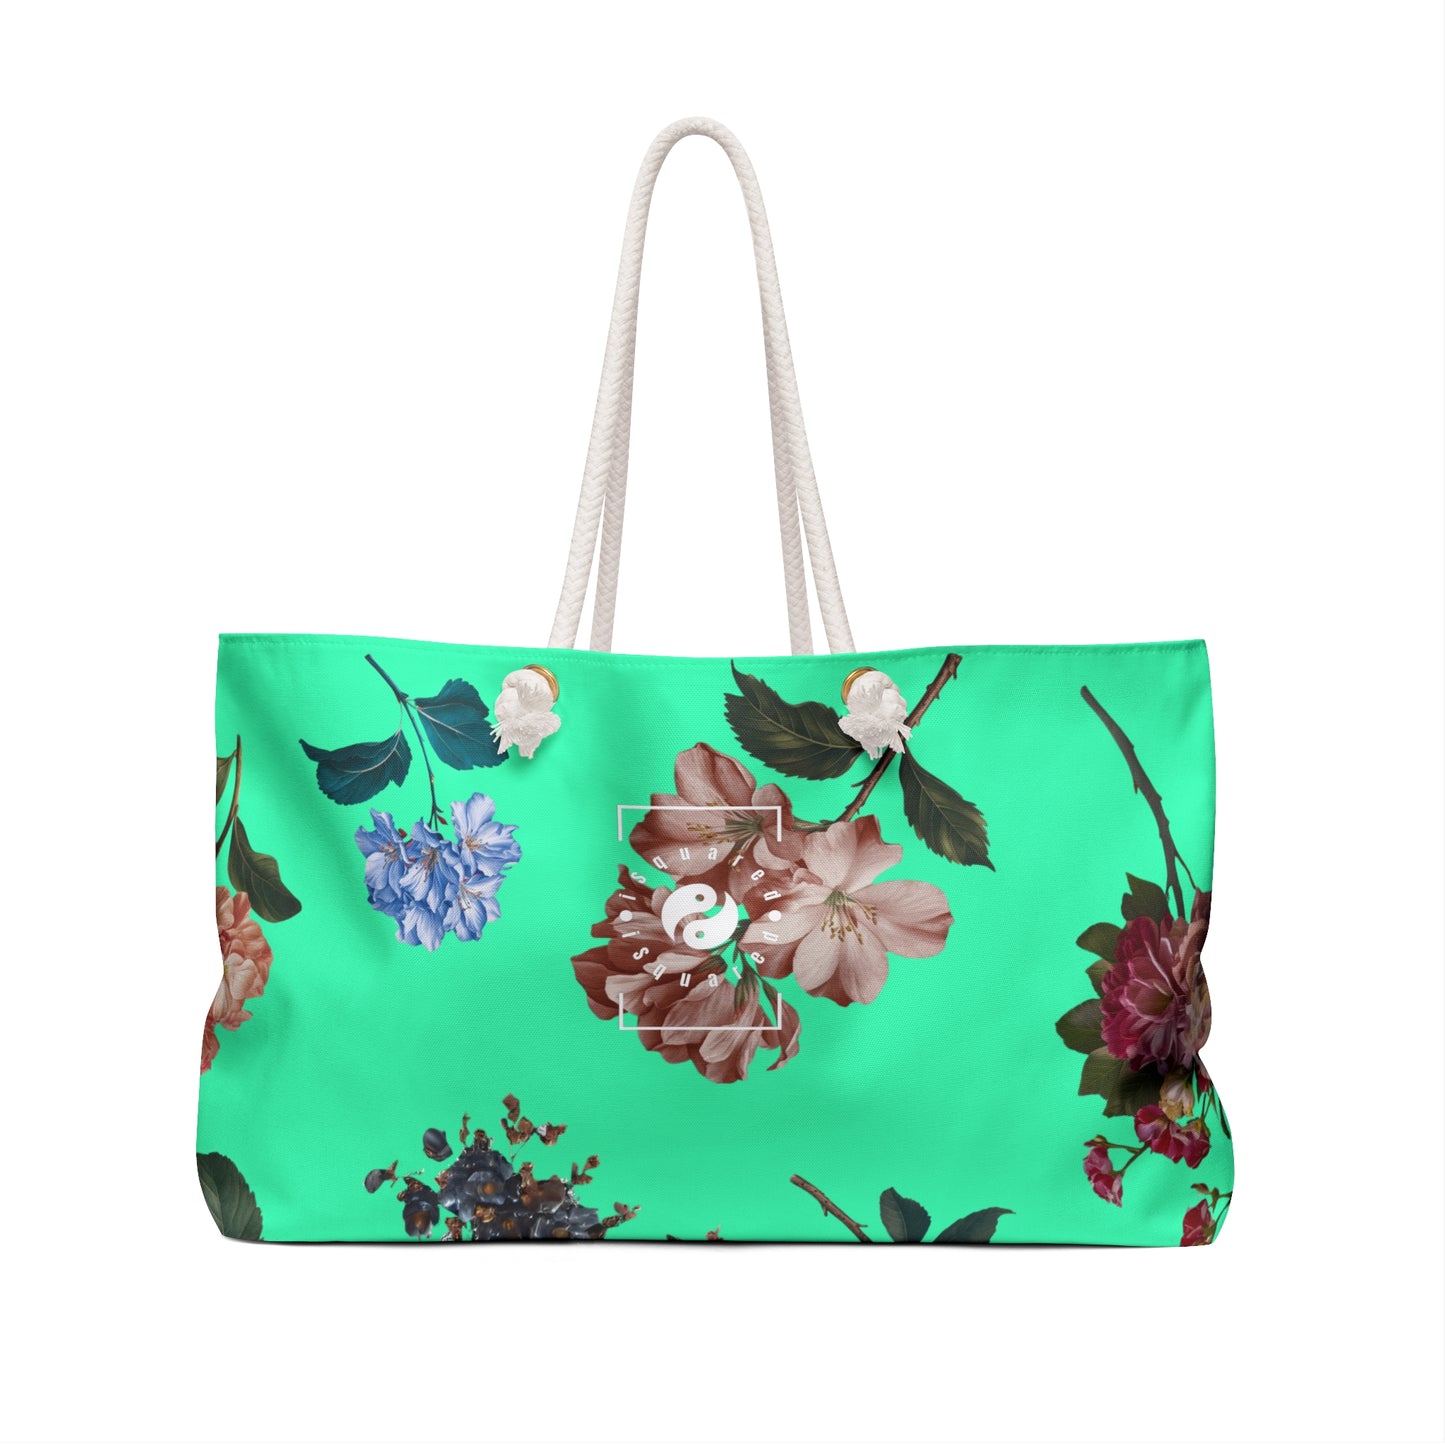 Botanicals on Turquoise - Casual Yoga Bag